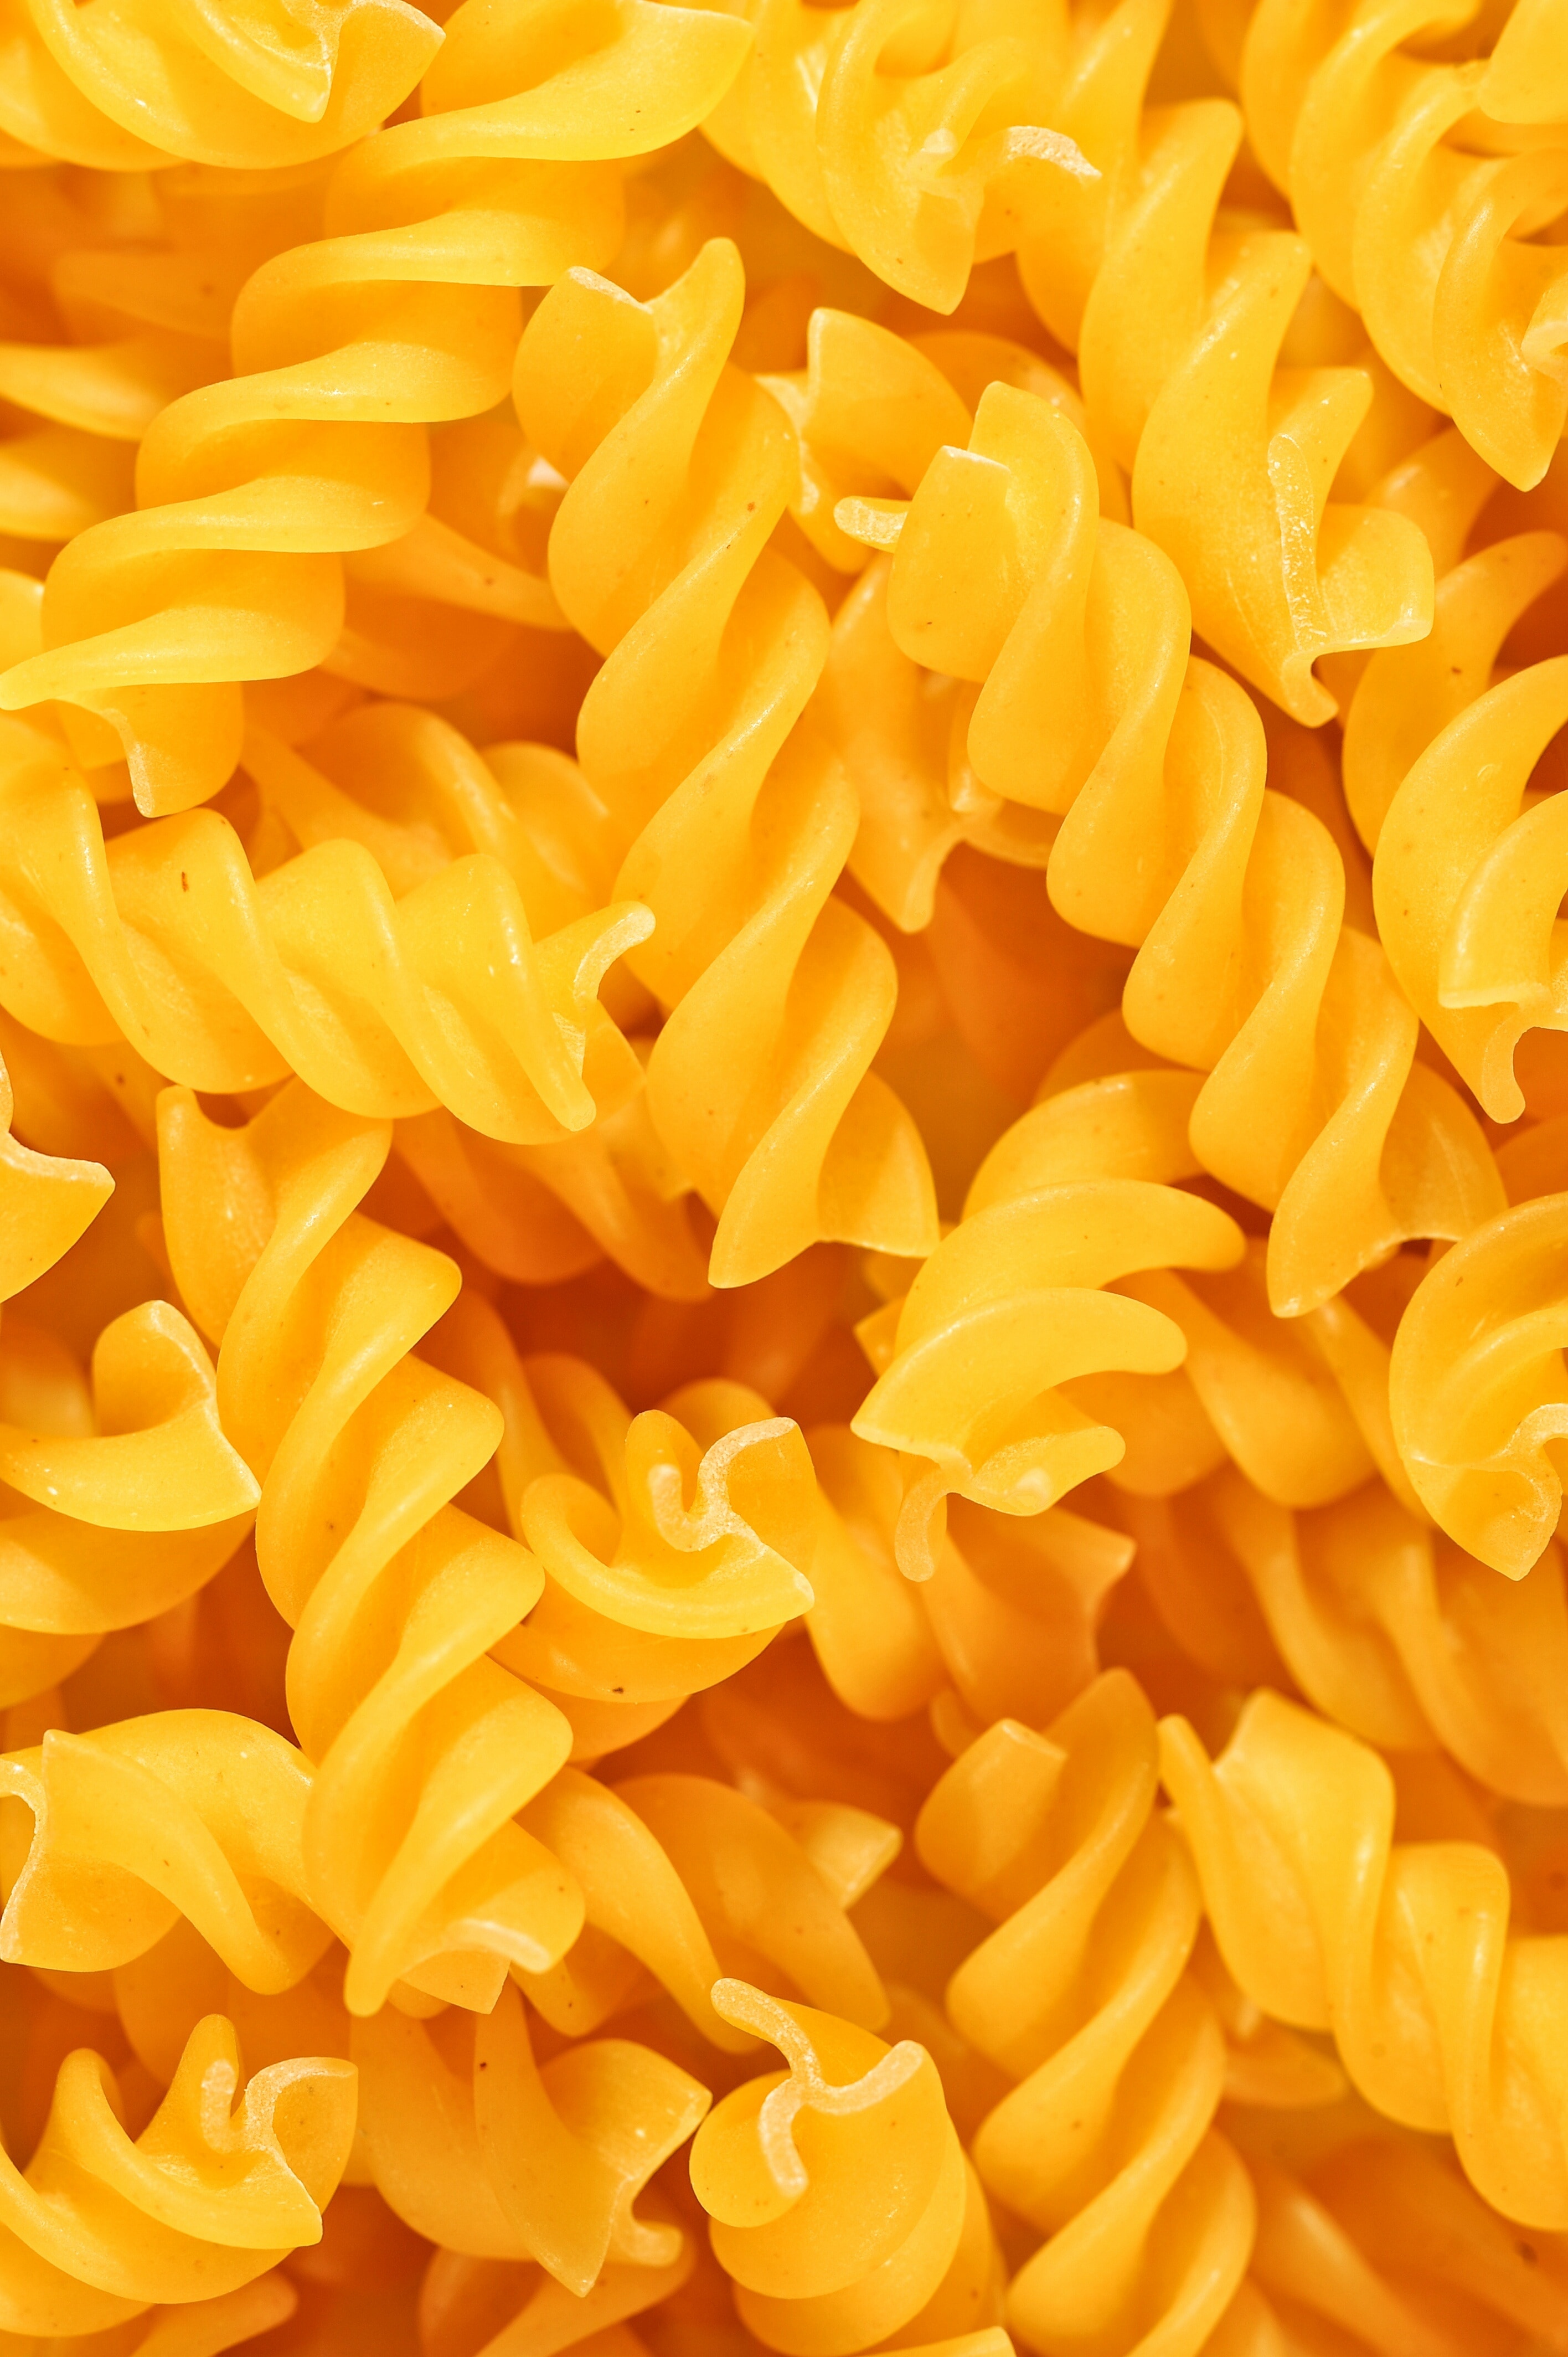 Download Yellow Macaroni Free Image Peakpx Yellowimages Mockups